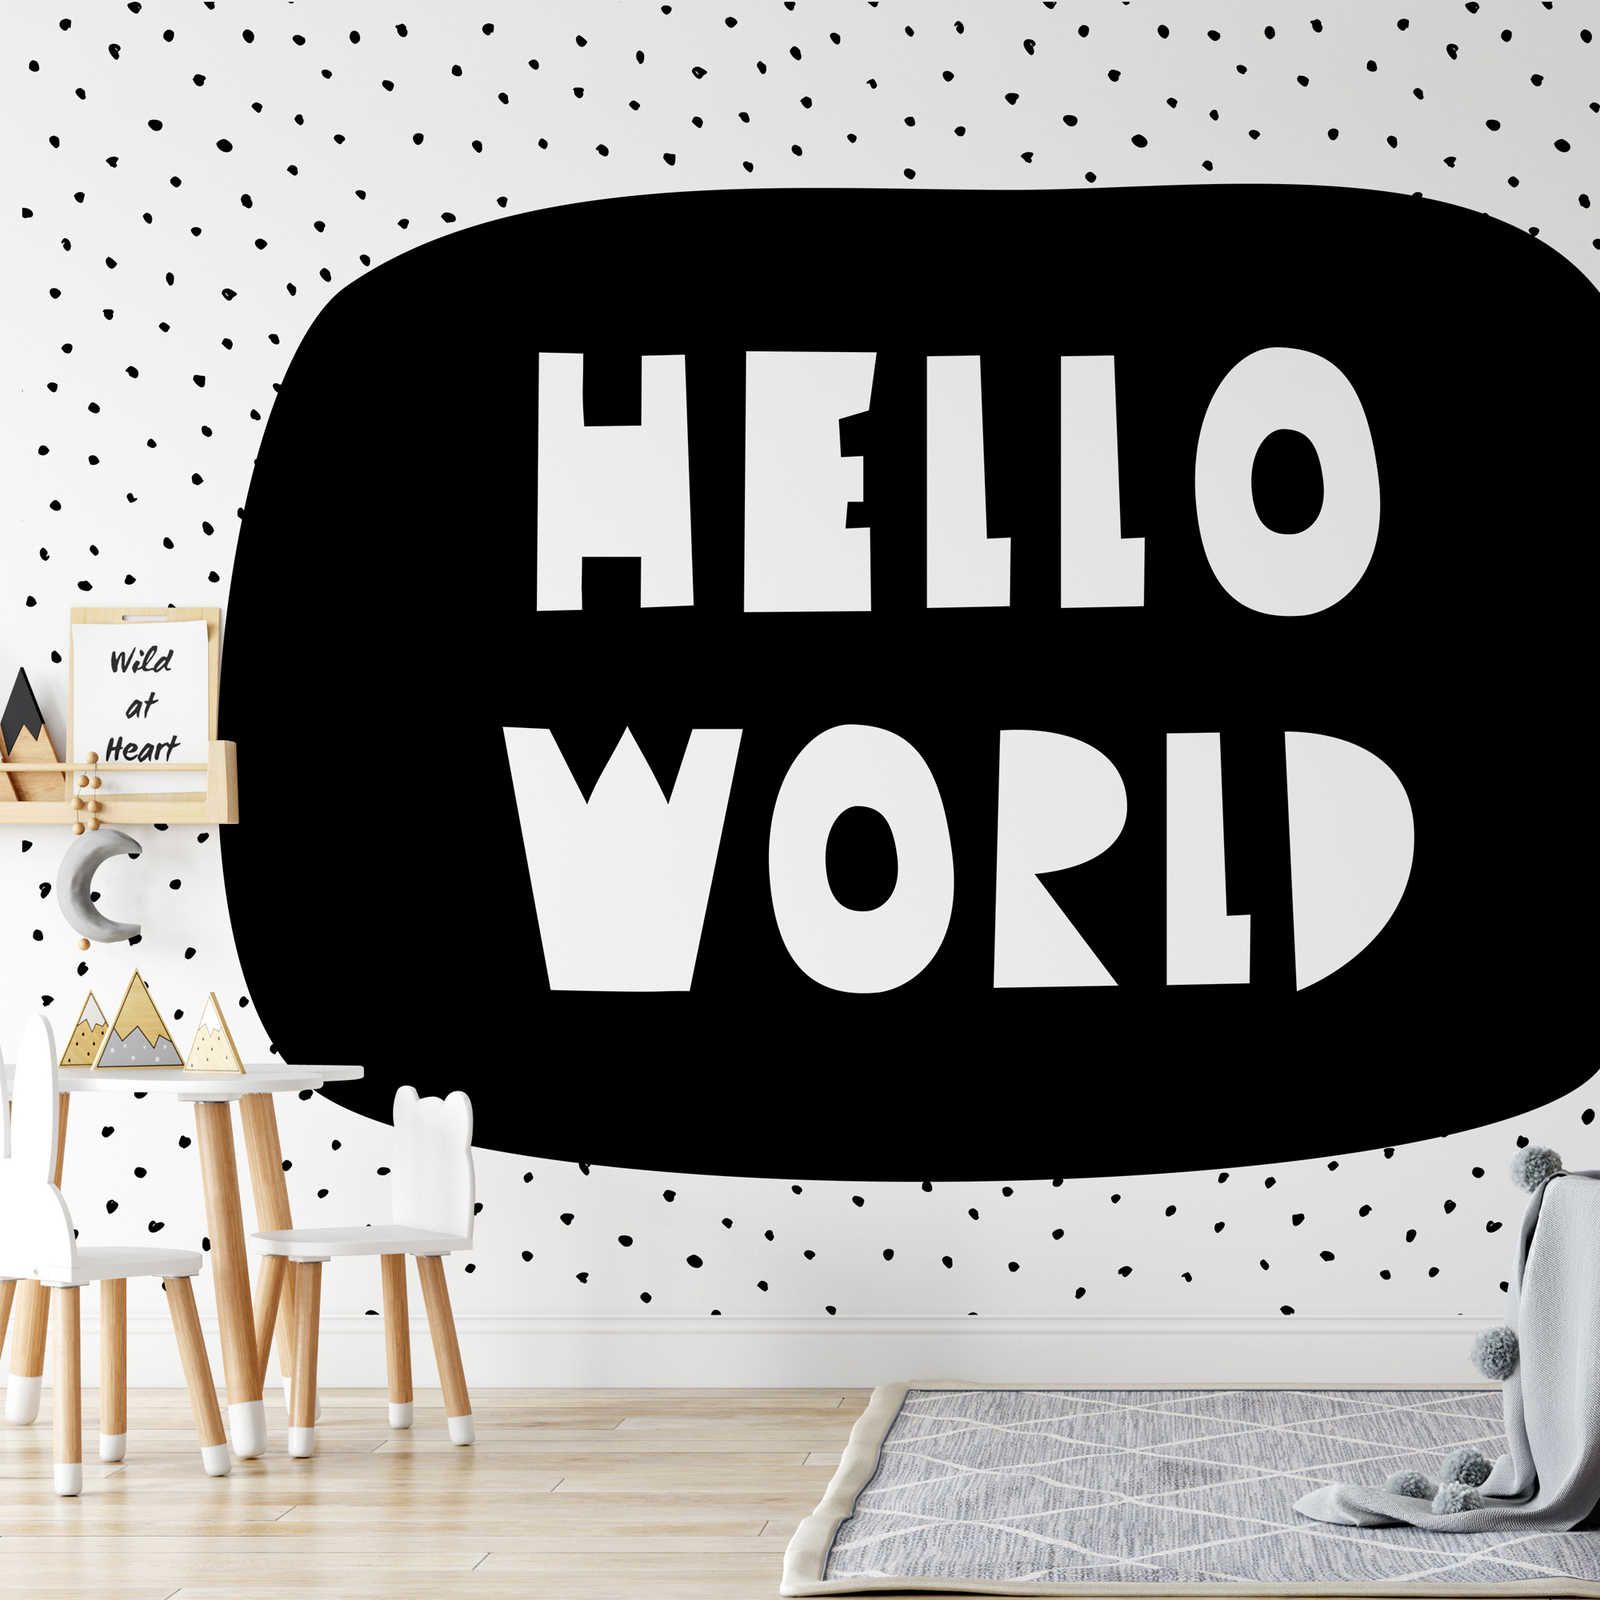 Fotomural para habitación infantil con letras "Hello World" - Material sin tejer liso y mate
